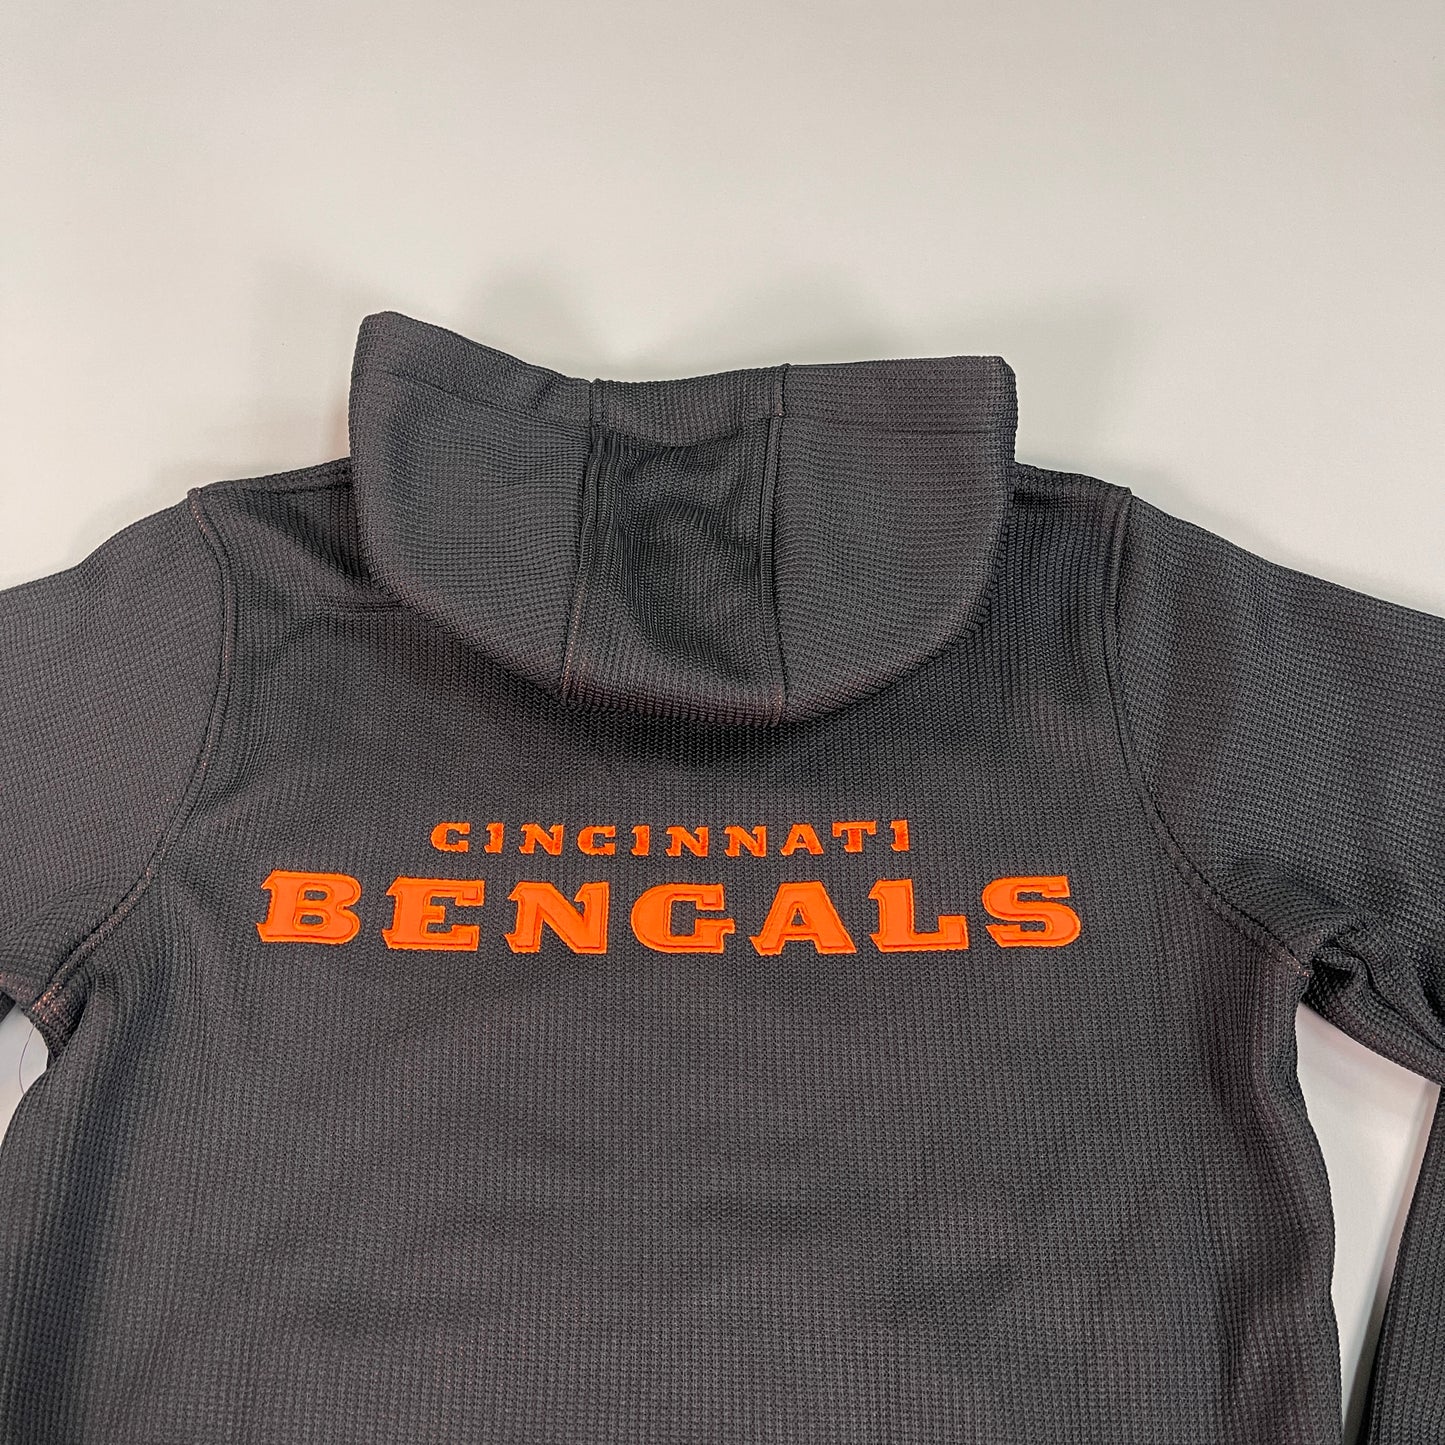 NFL CINCINNATI Bengals Full Zip Hooded Sweater Jacket Men's Sz S Black / Orange (New)